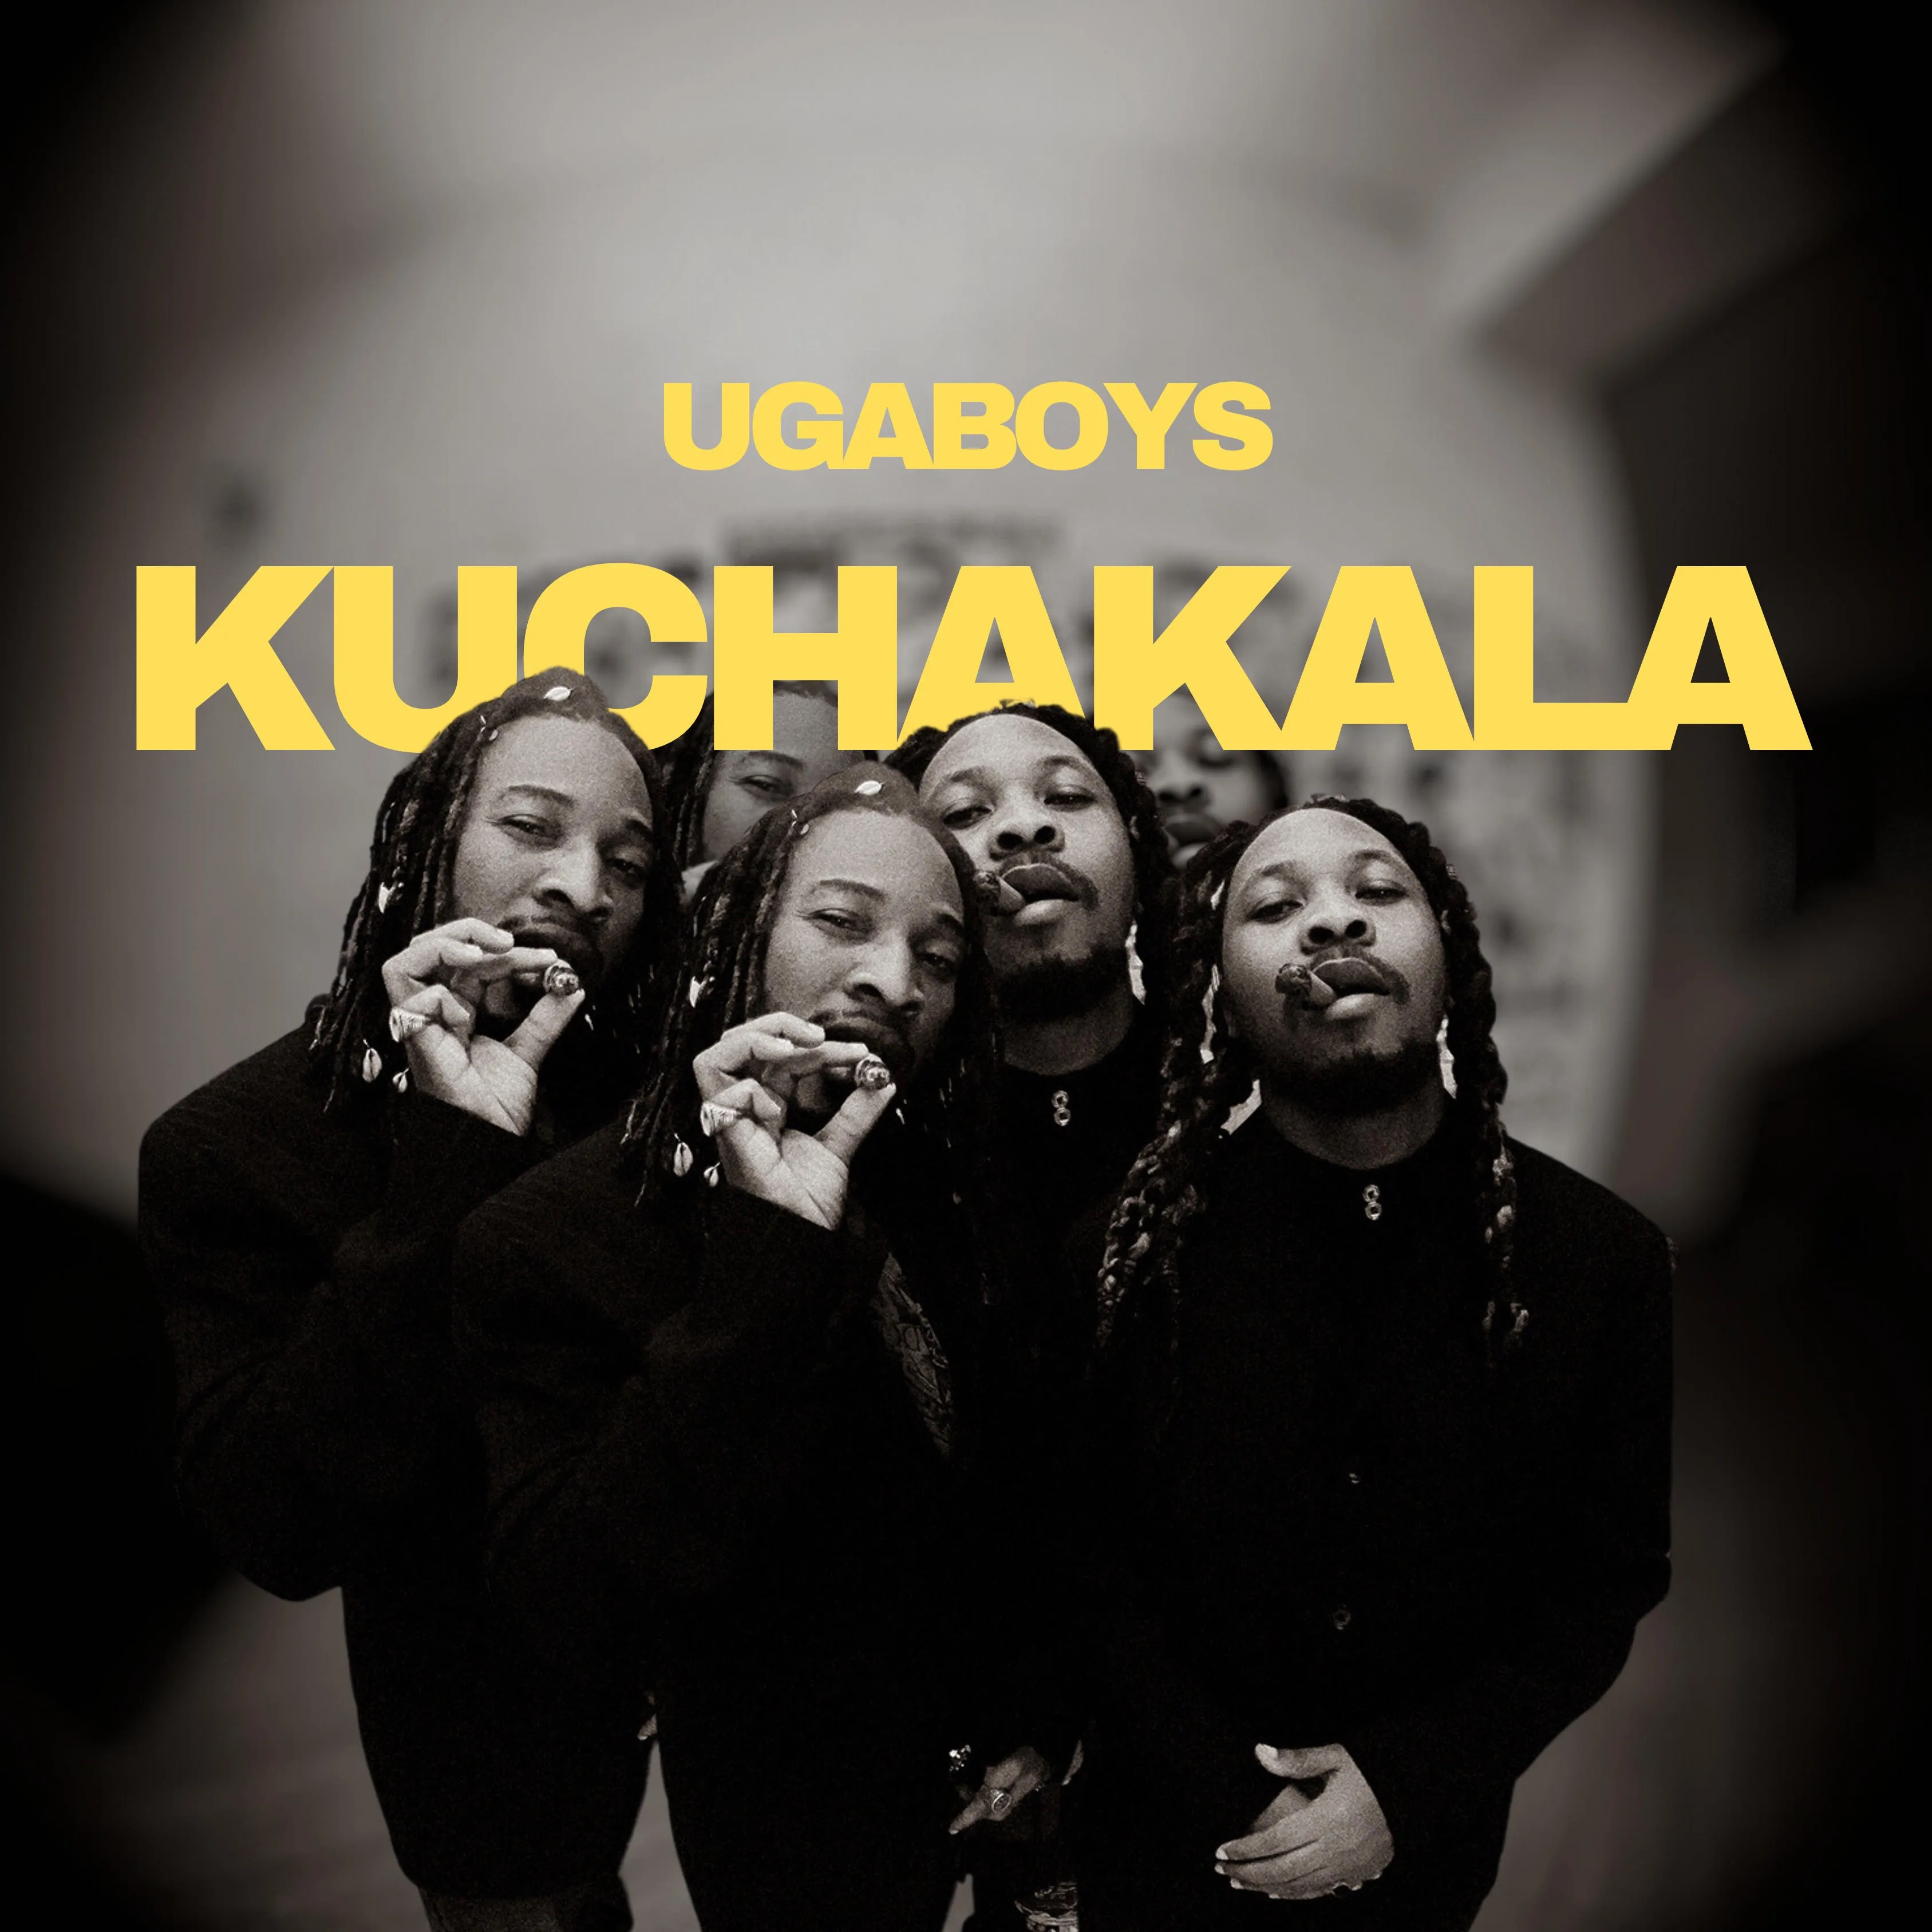 ugaboys-kuchakala-album-cover